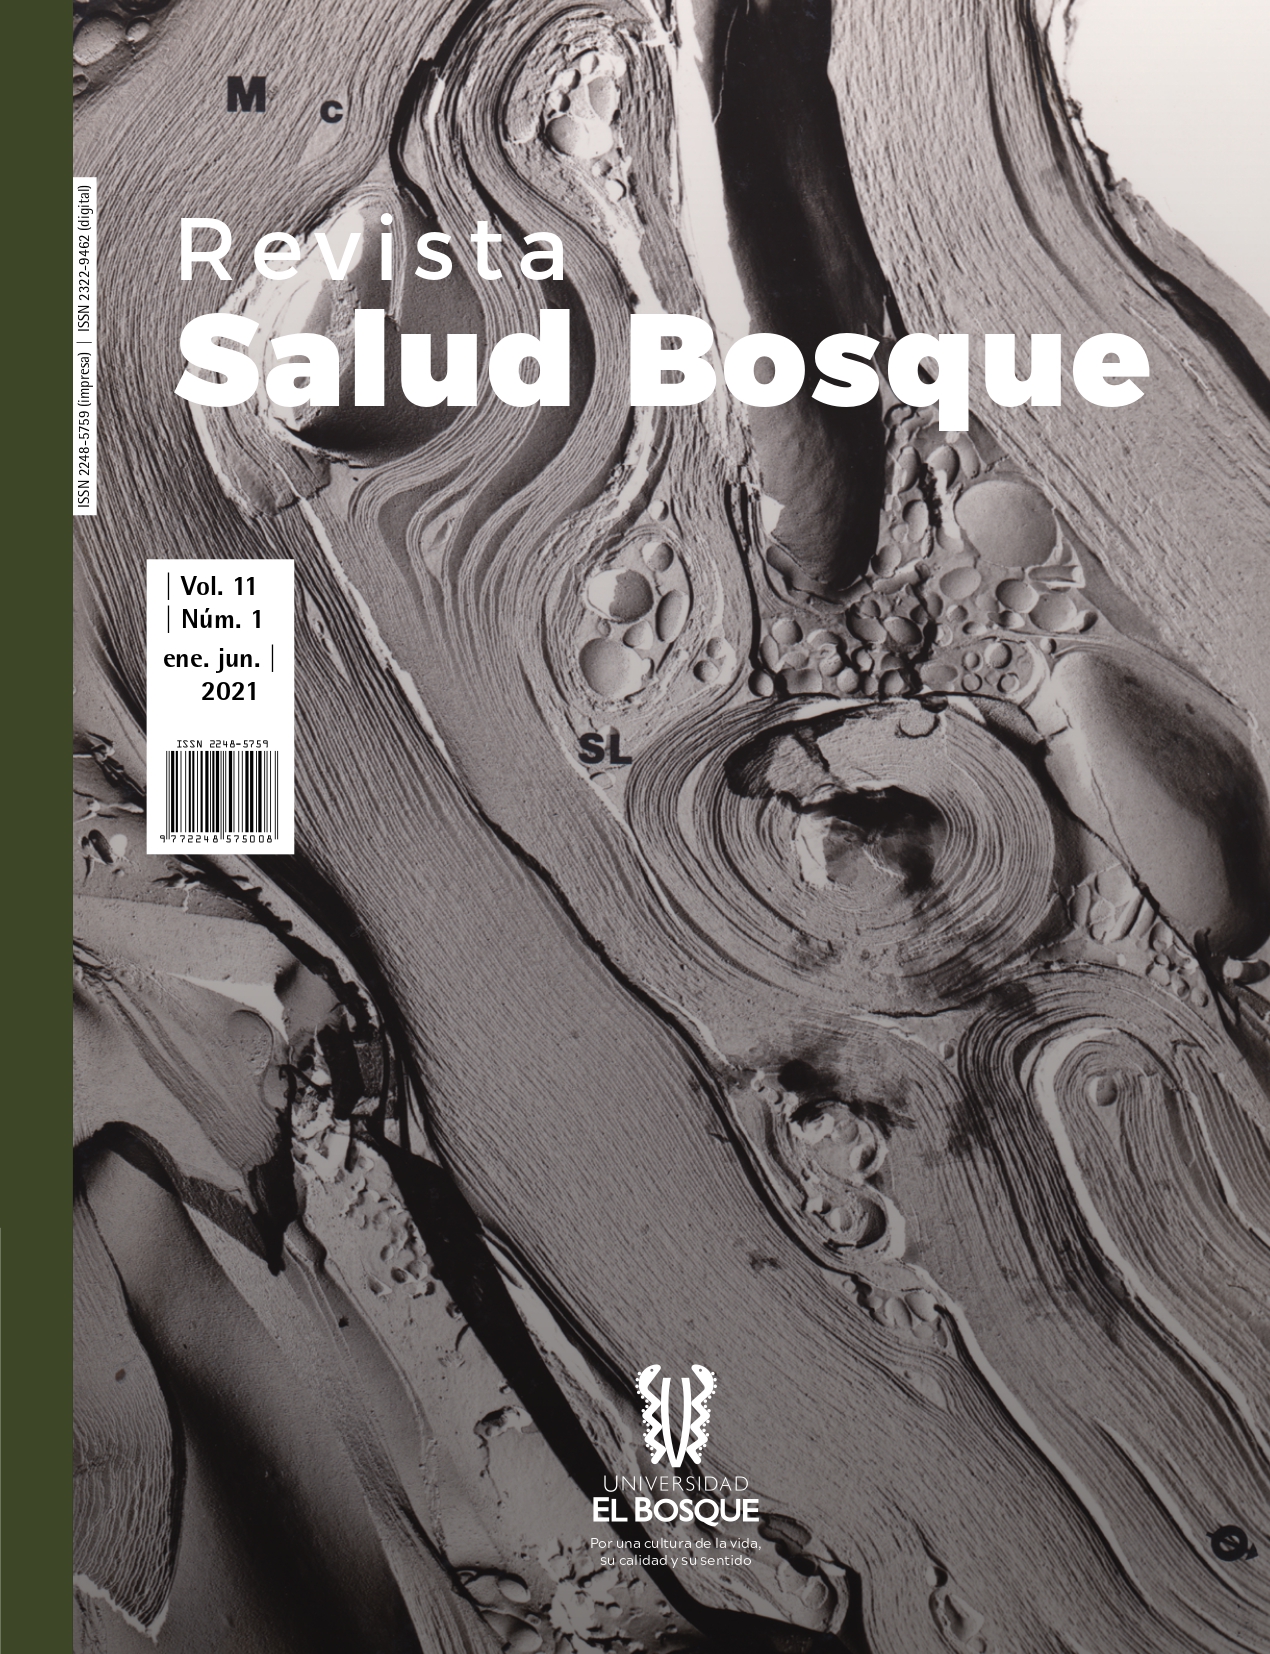 					Ver Vol. 11 Núm. 1 (2021): Revista Salud Bosque
				